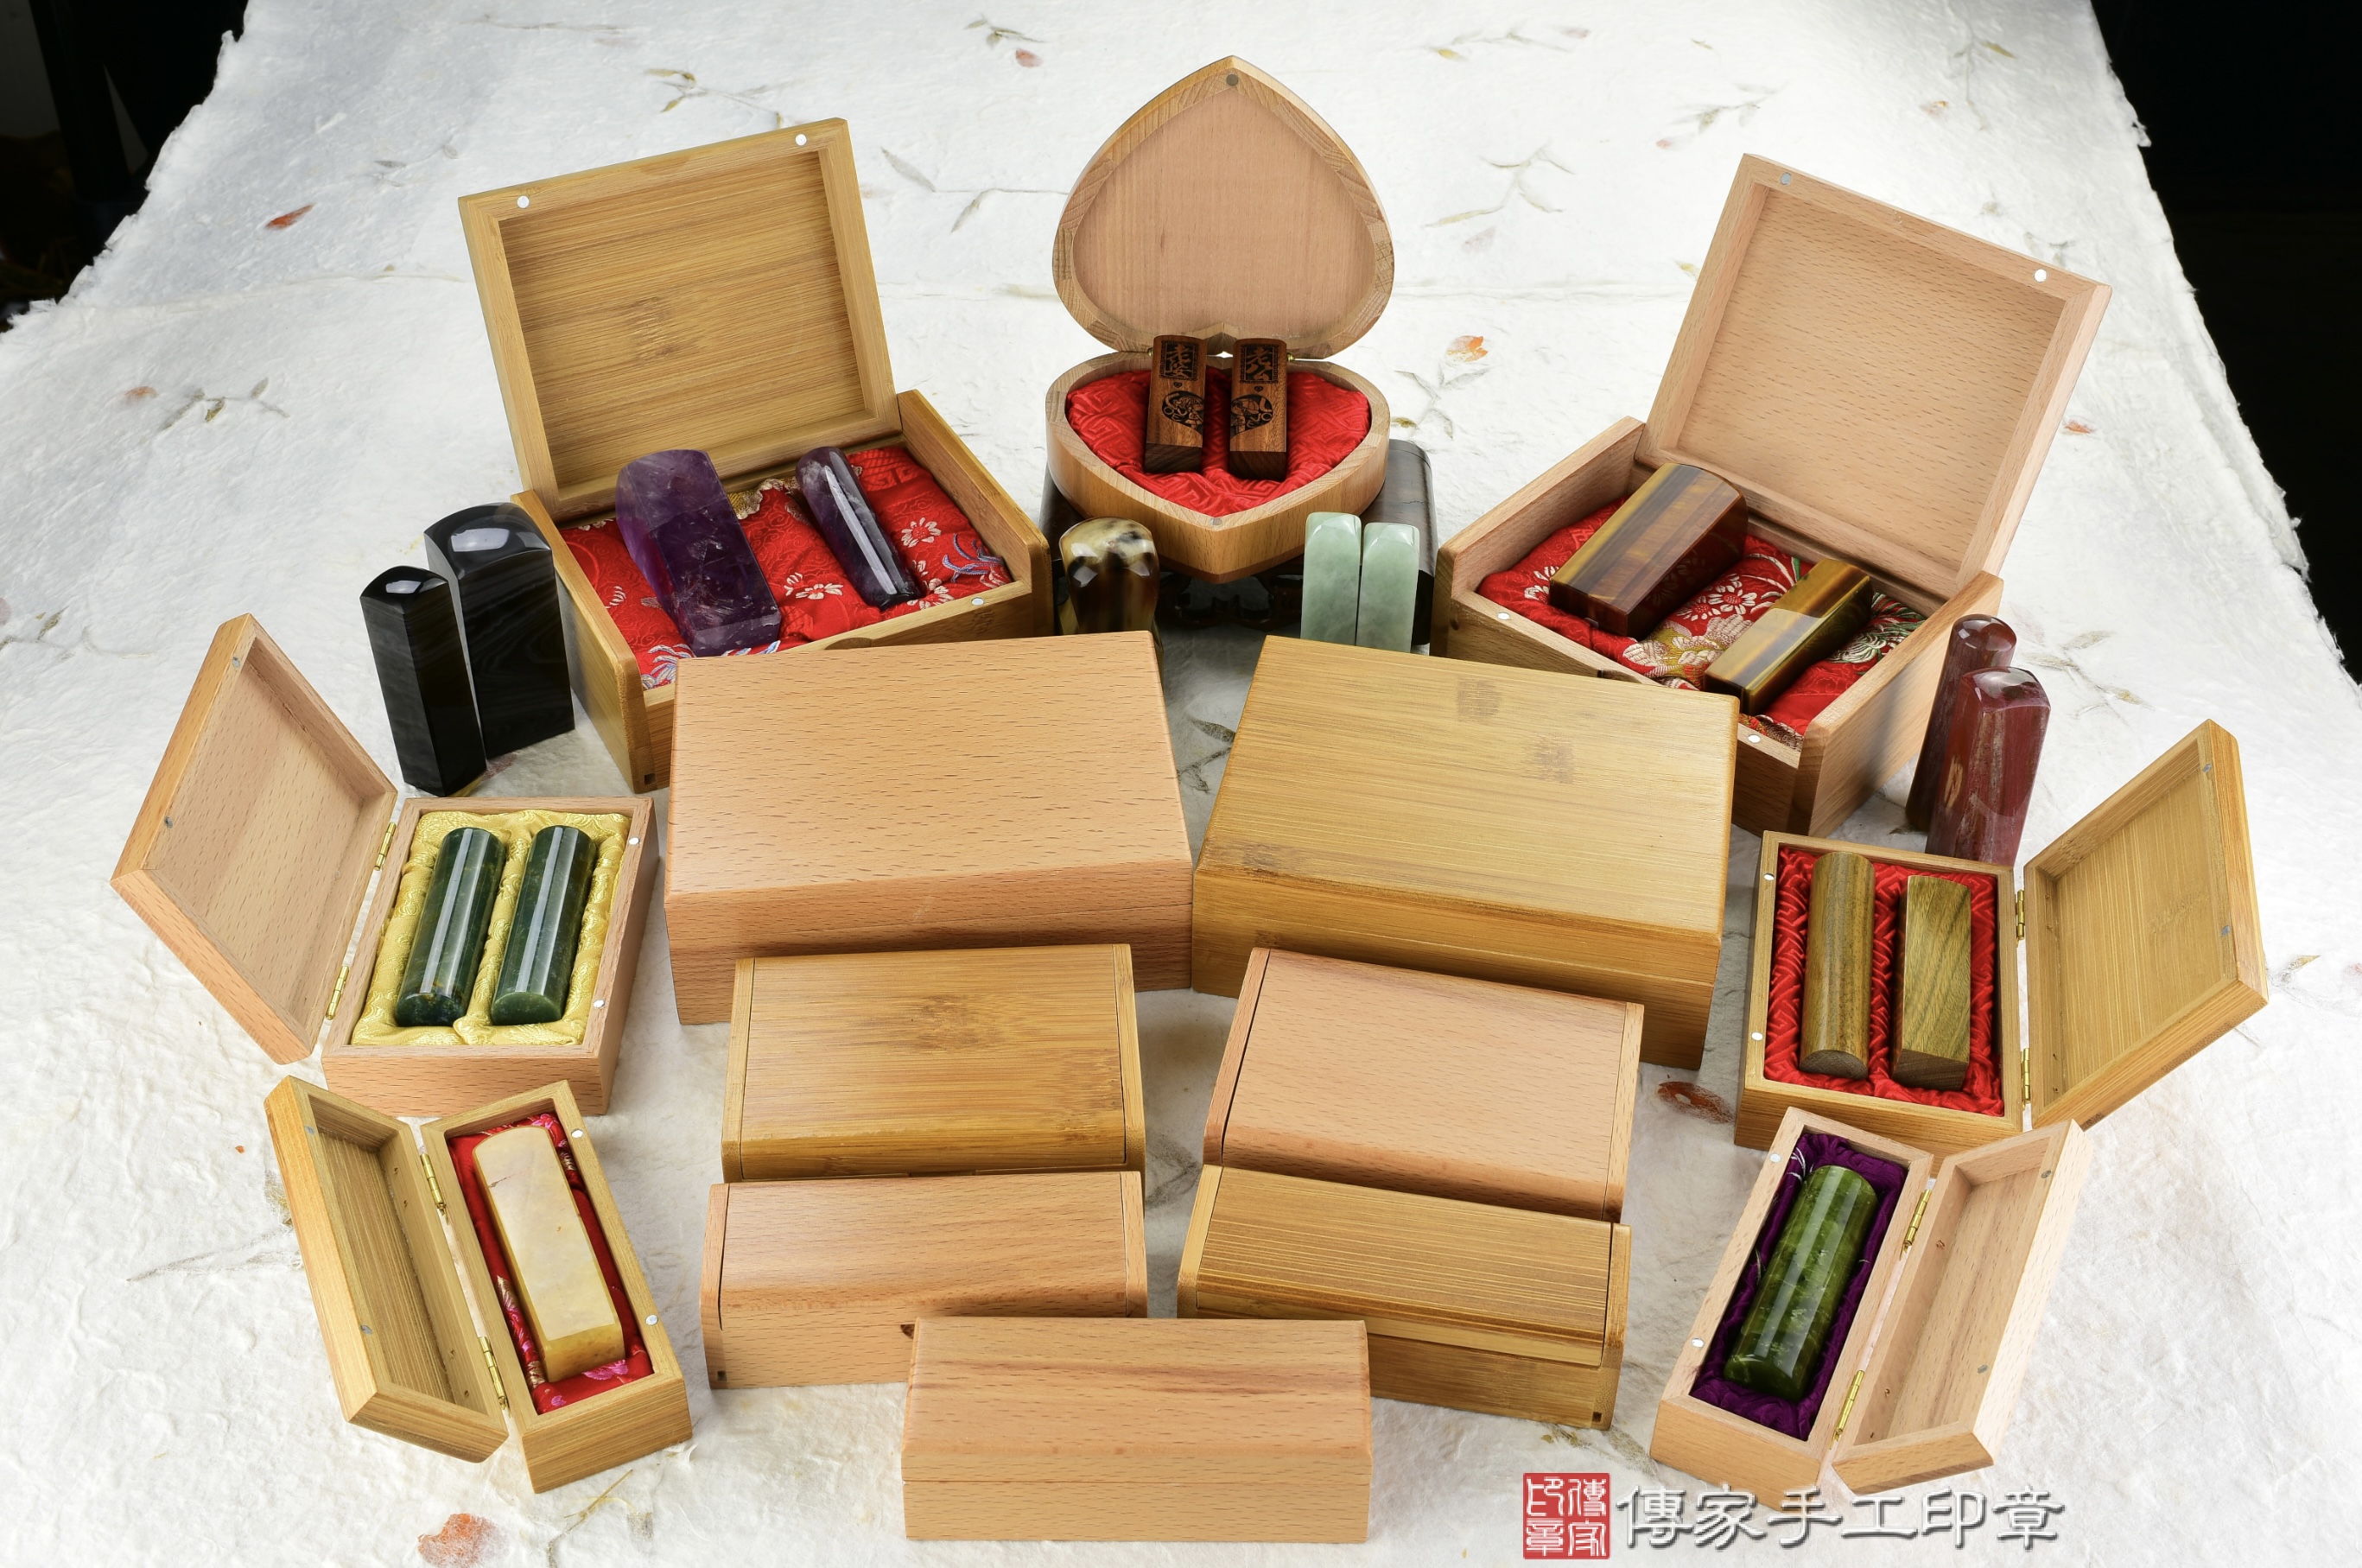 各式各樣的印章竹盒、櫸木木盒